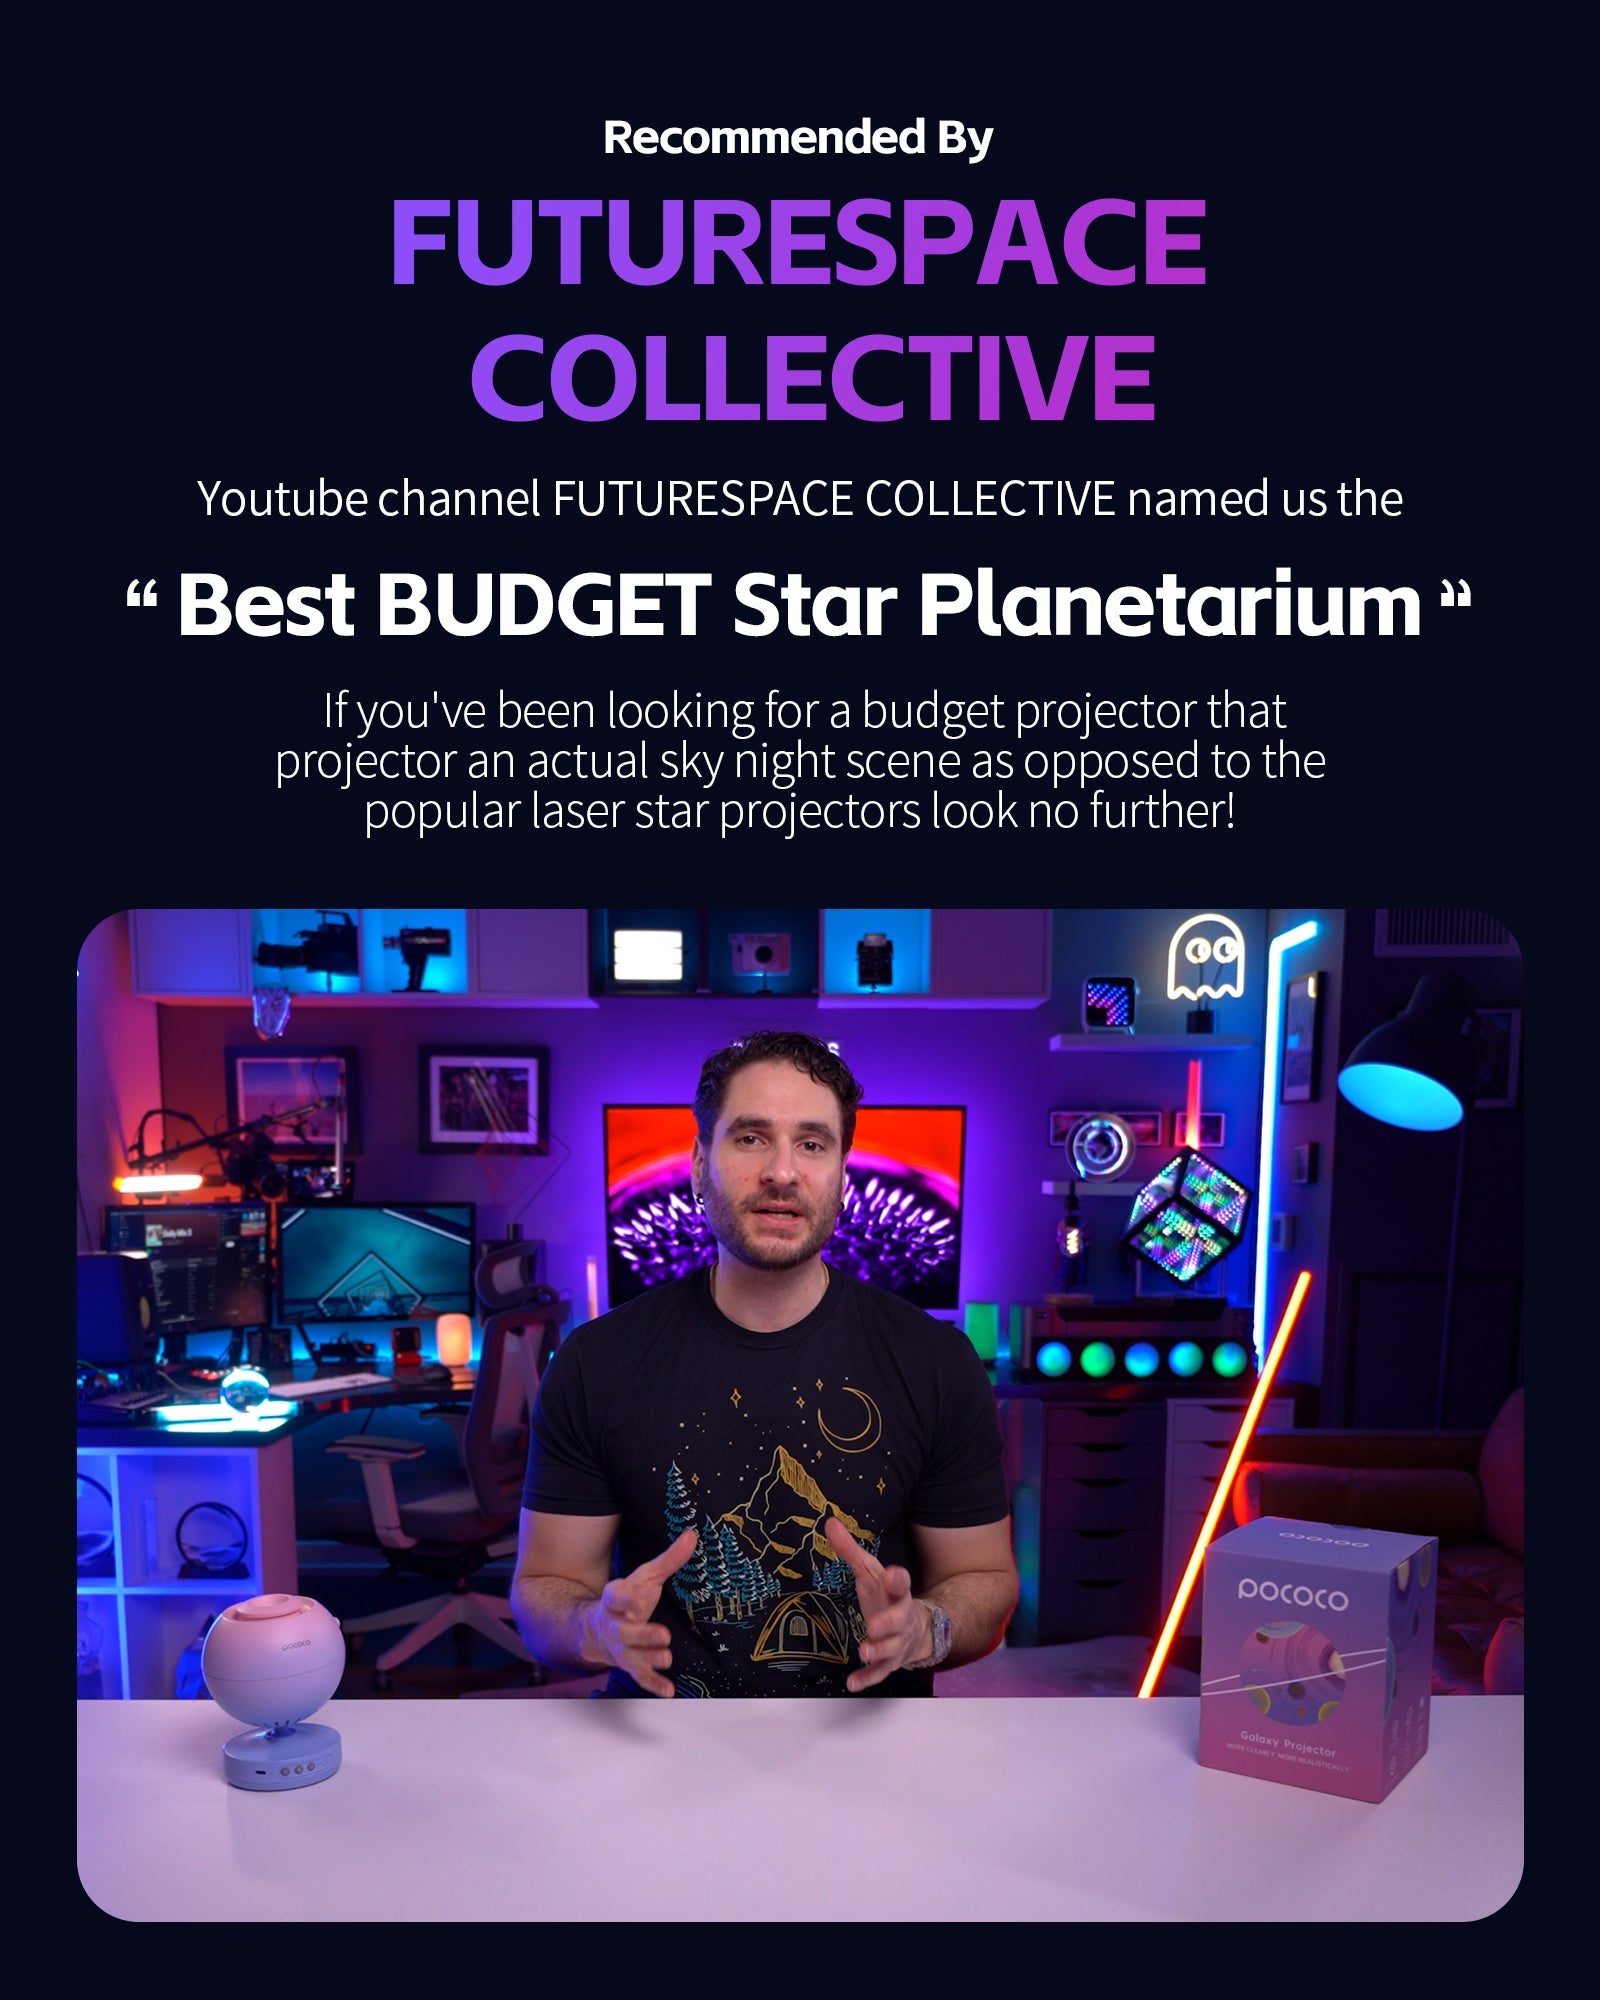 FUTURESPACE COLLECTIVE introduces POCOCO Galaxy Projector